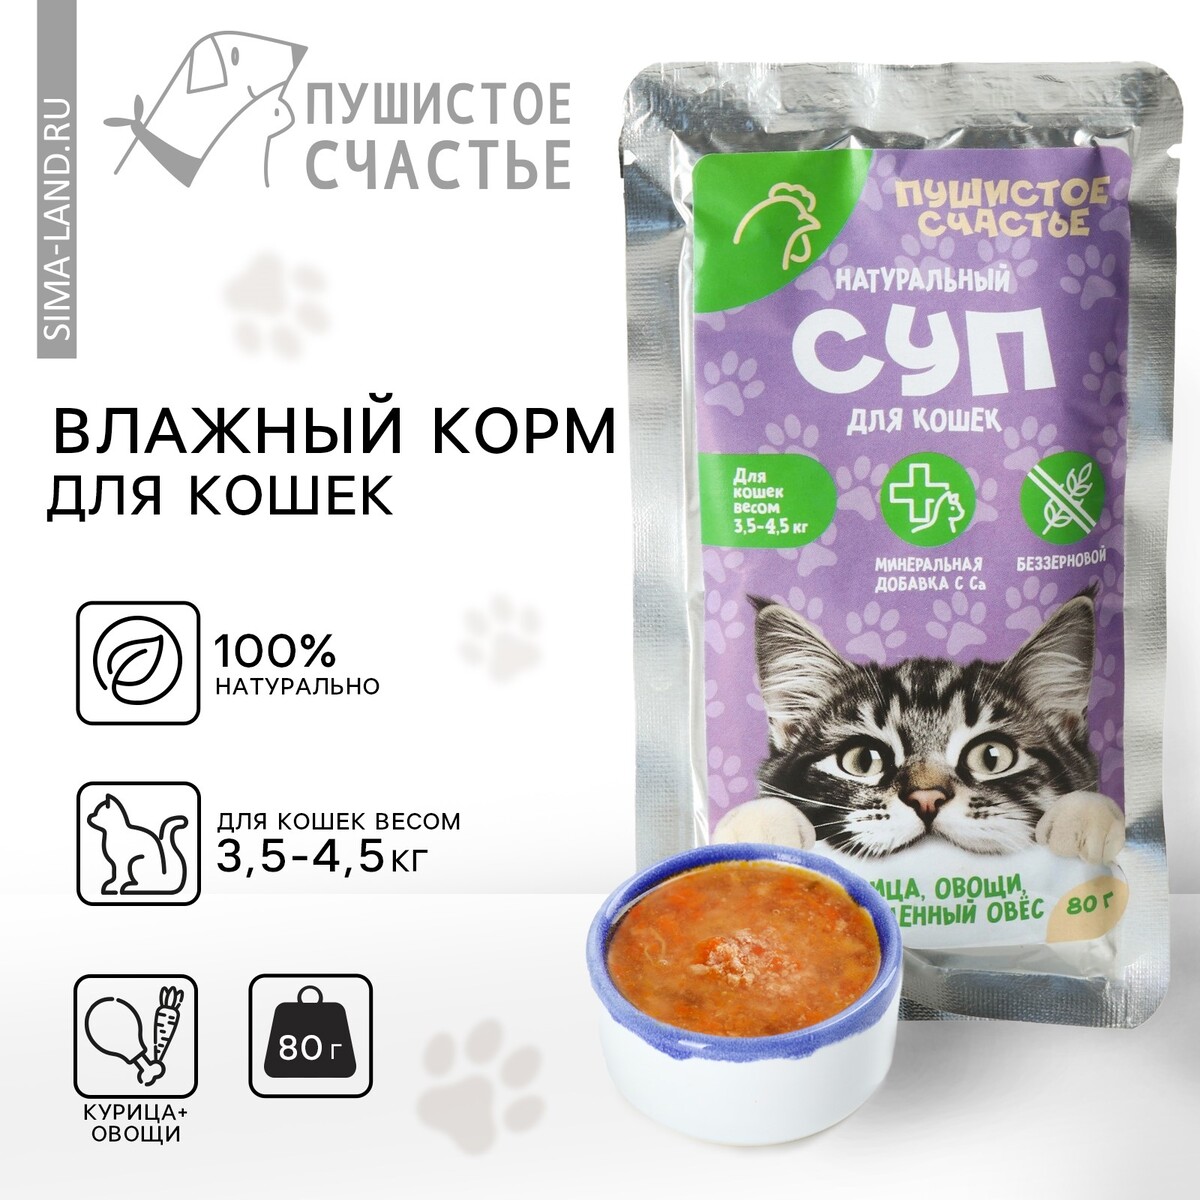 Влажный корм пушистое счастье беззерновой суп с курицей, овощами и овсом, для кошек, 80 г. рискованное счастье